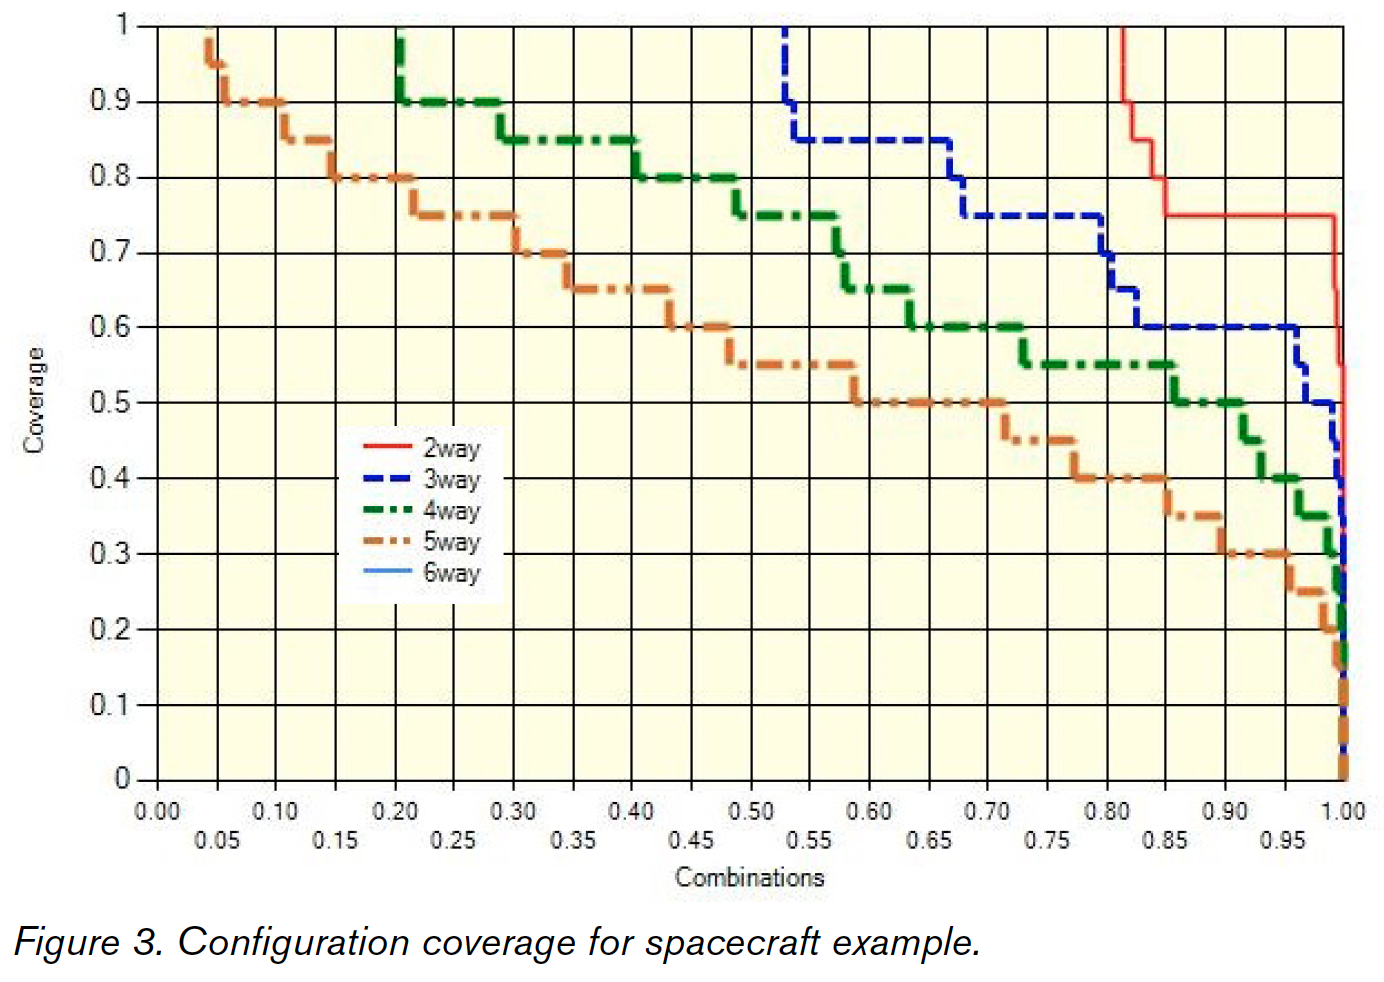 Spacecraft test coverage